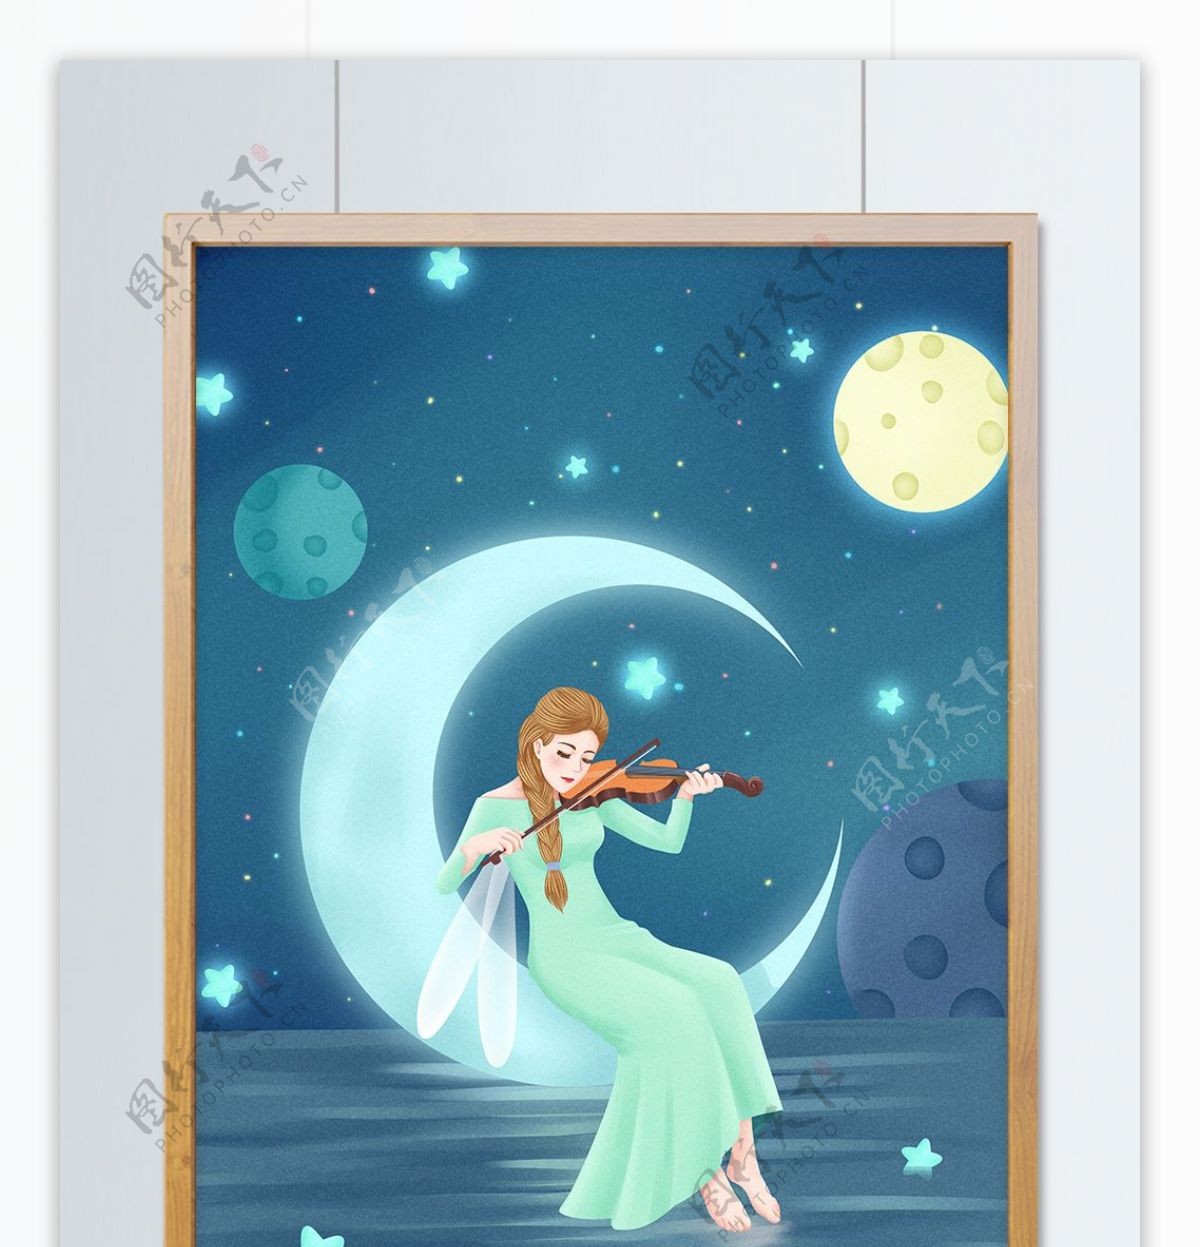 全世界晚安小仙女演奏小提琴